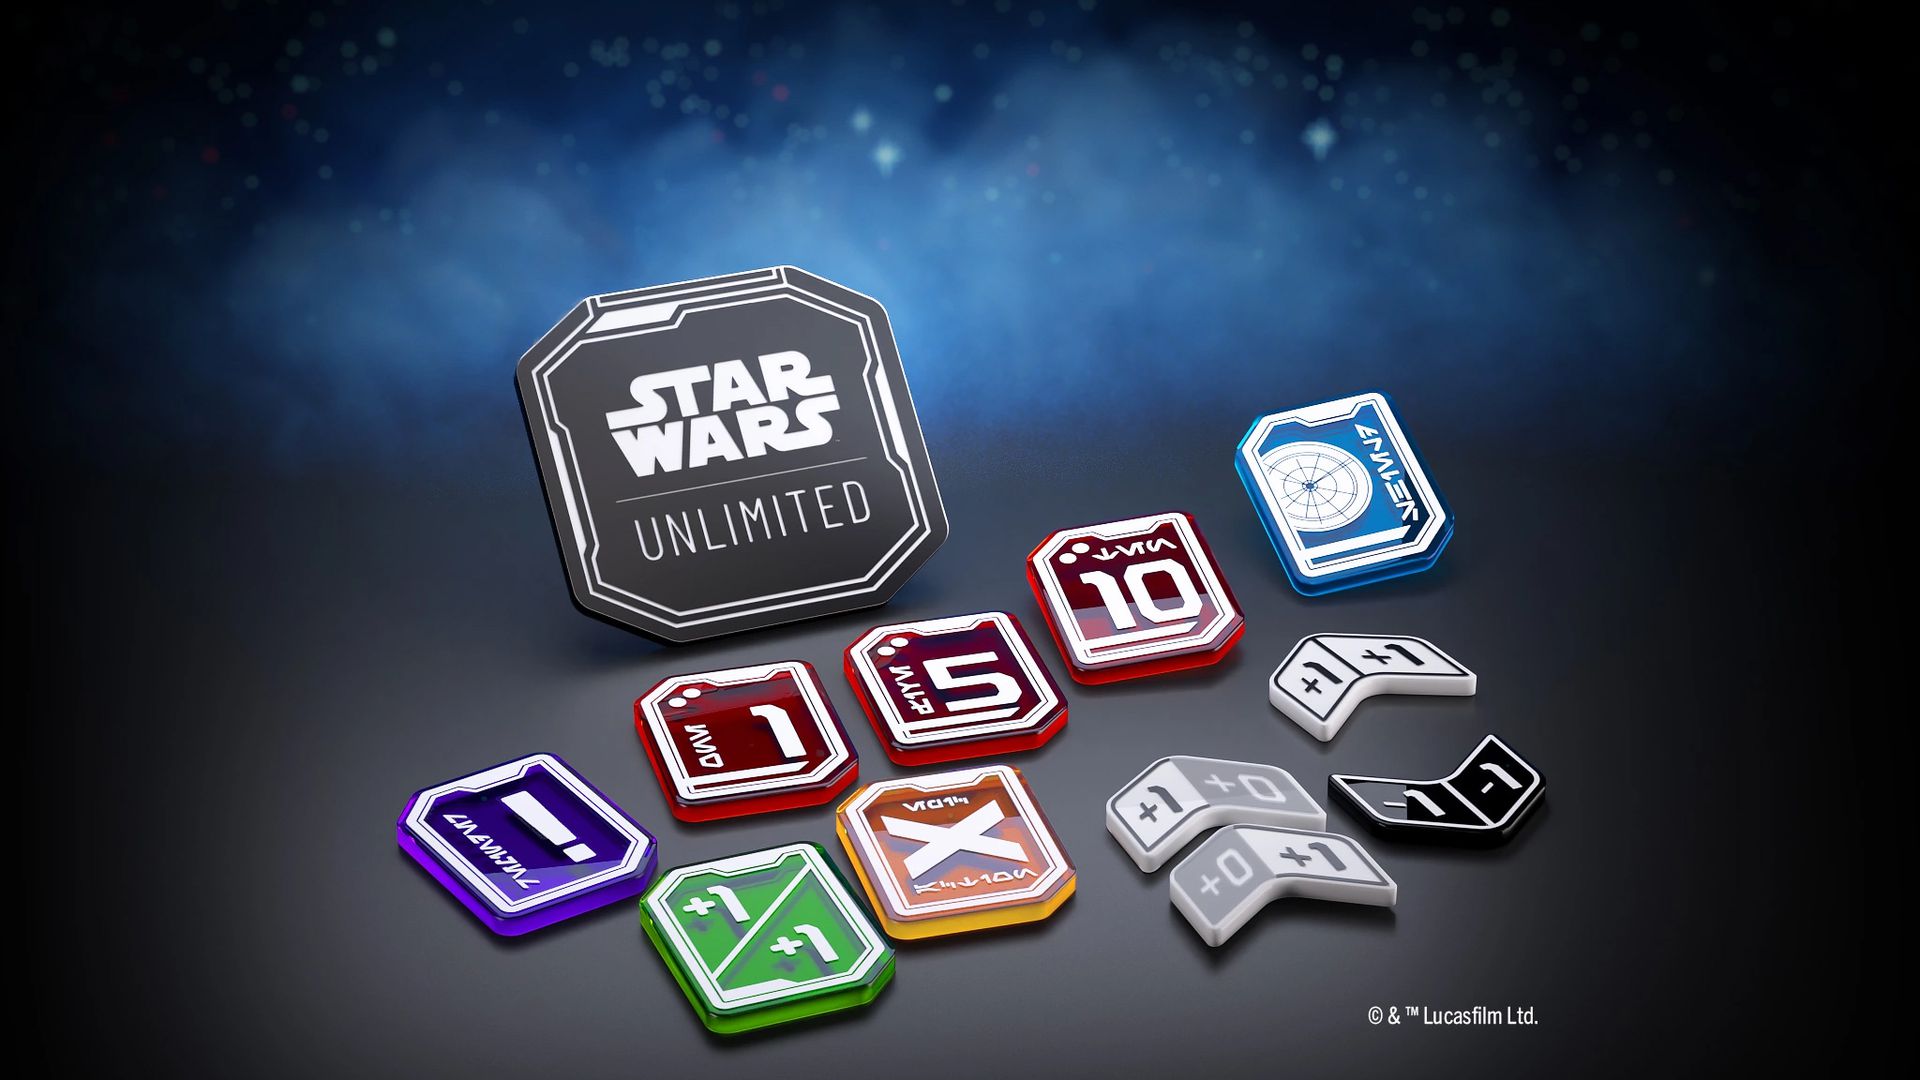 Arte chiave che mostra esempi di gettoni in acrilico premium per Star Wars Unlimited